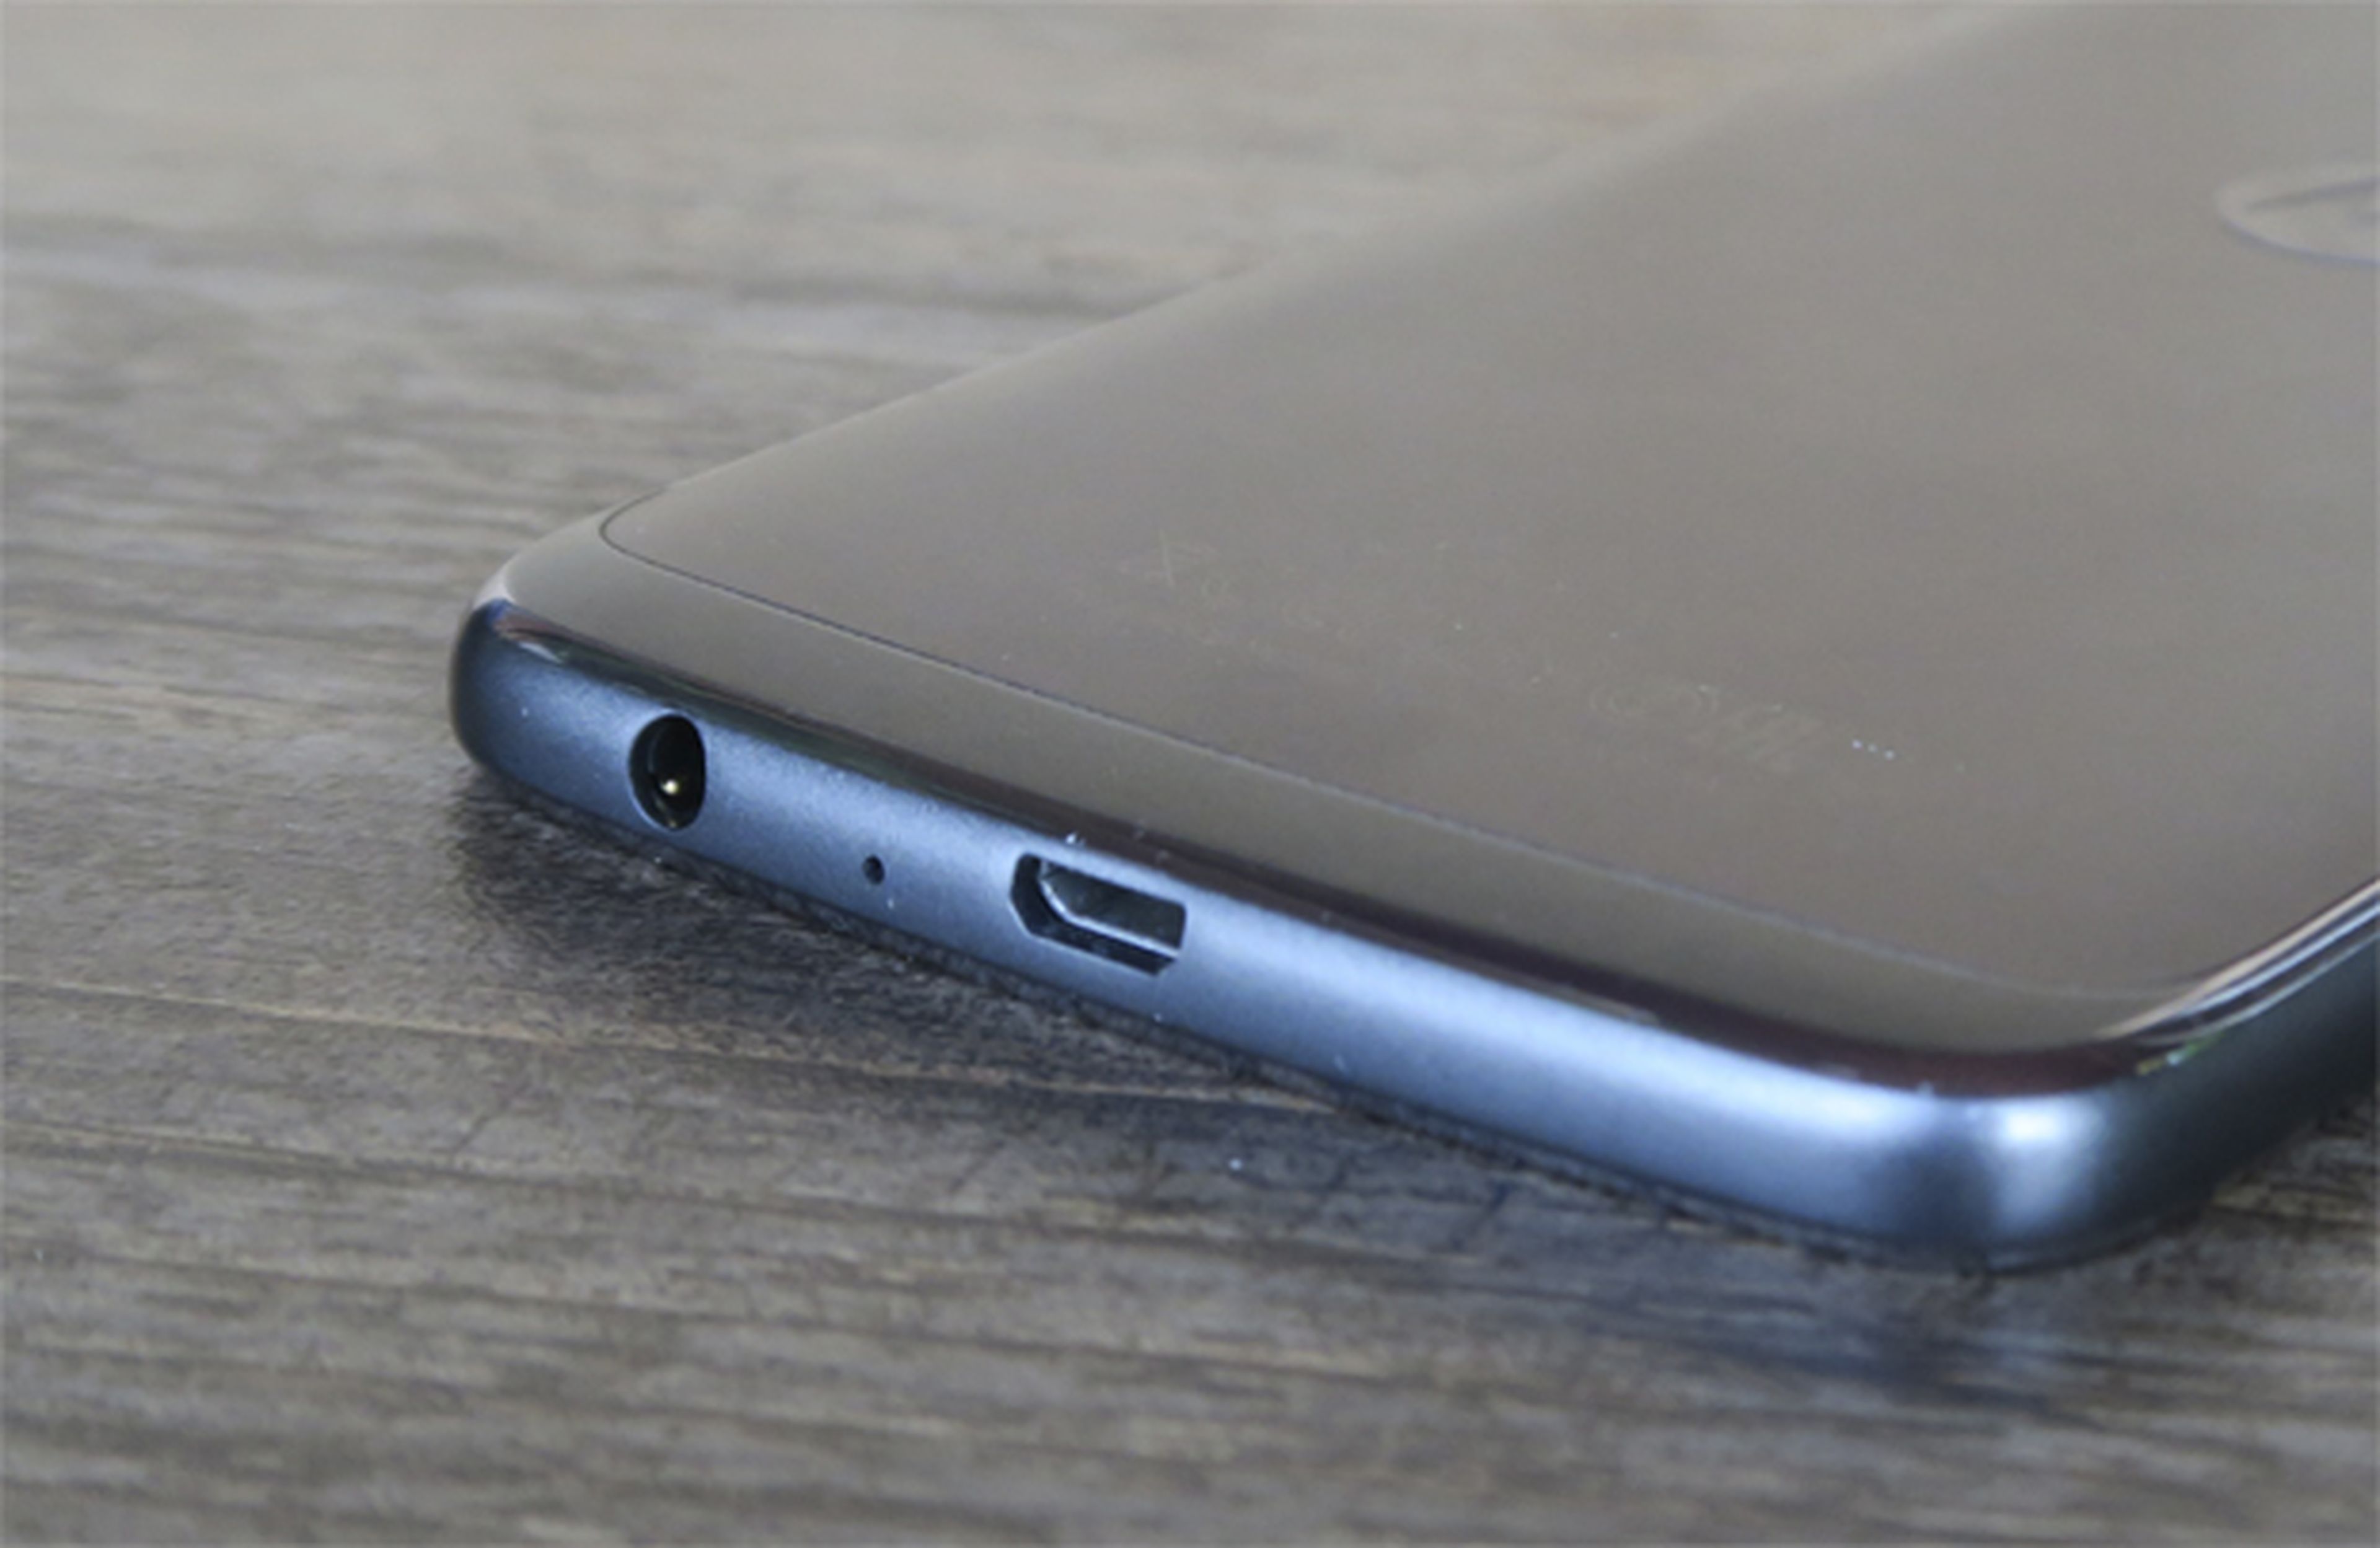 Los laterales con efecto cromado del Moto G5 Plus, lo más criticable de este móvil desde nuestra opinión